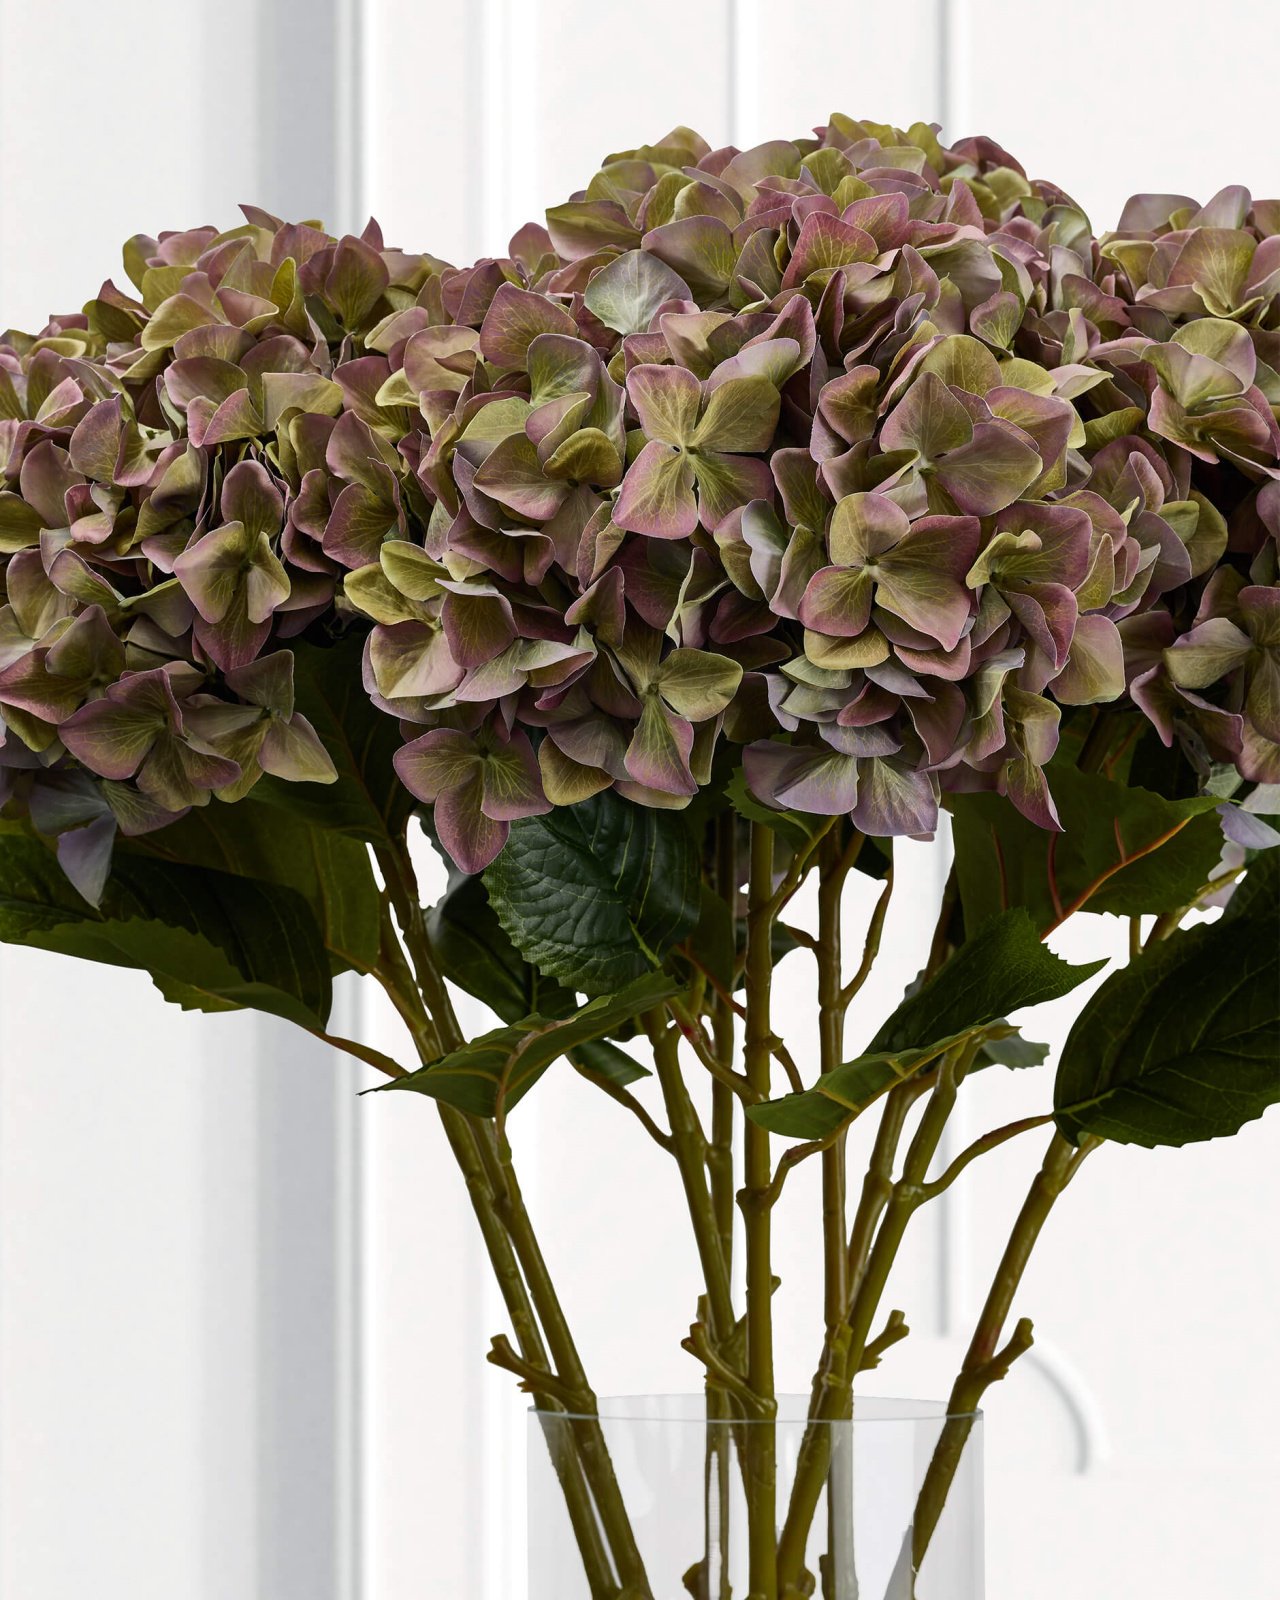 Hydrangea Cut Flower Purple